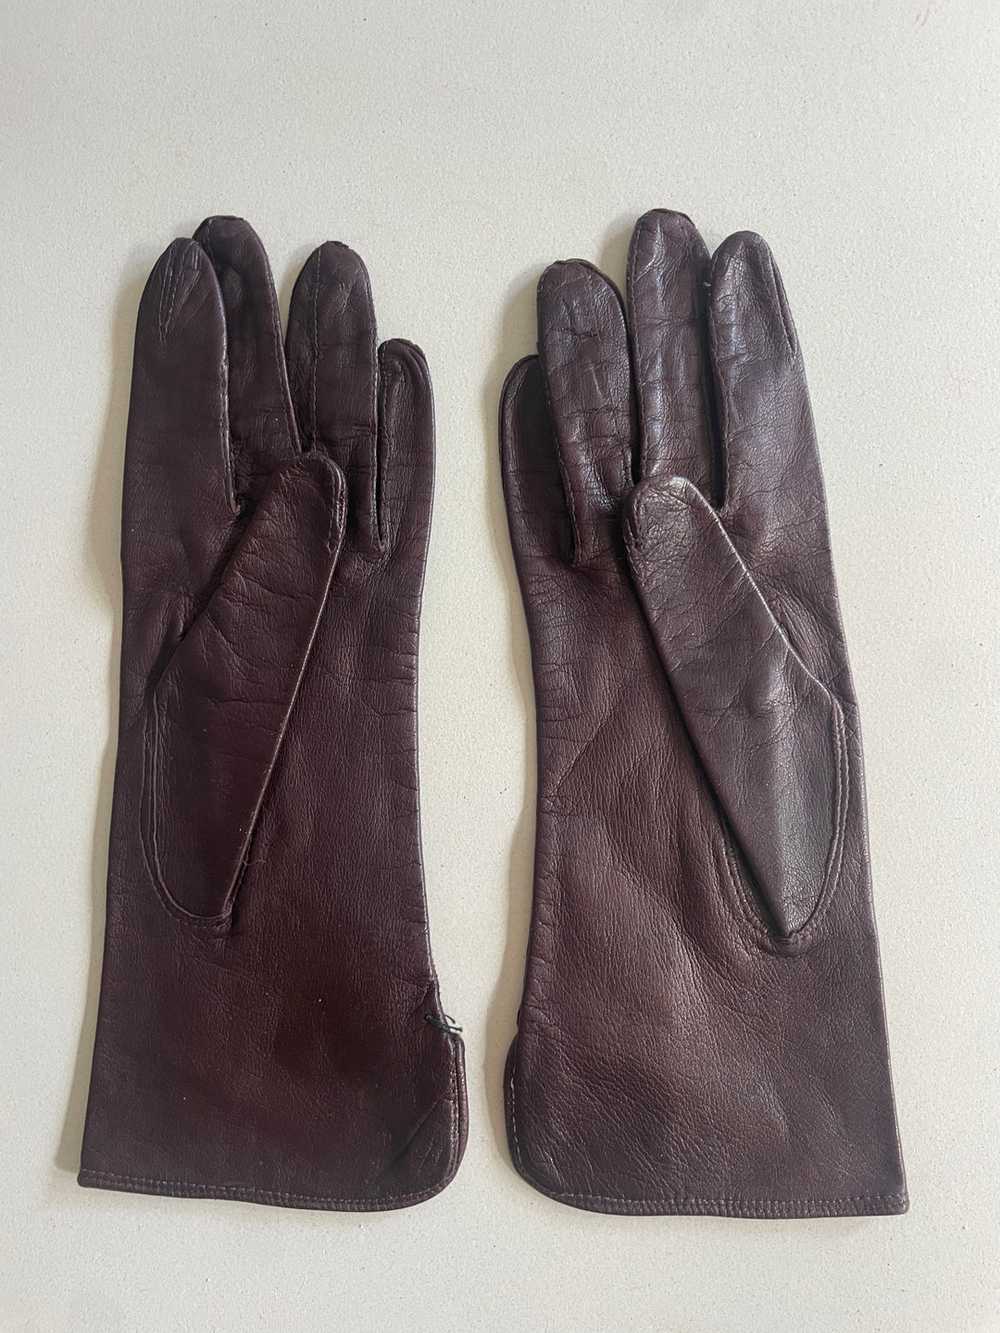 Vintage Dark Brown Kid Leather Gloves - image 2